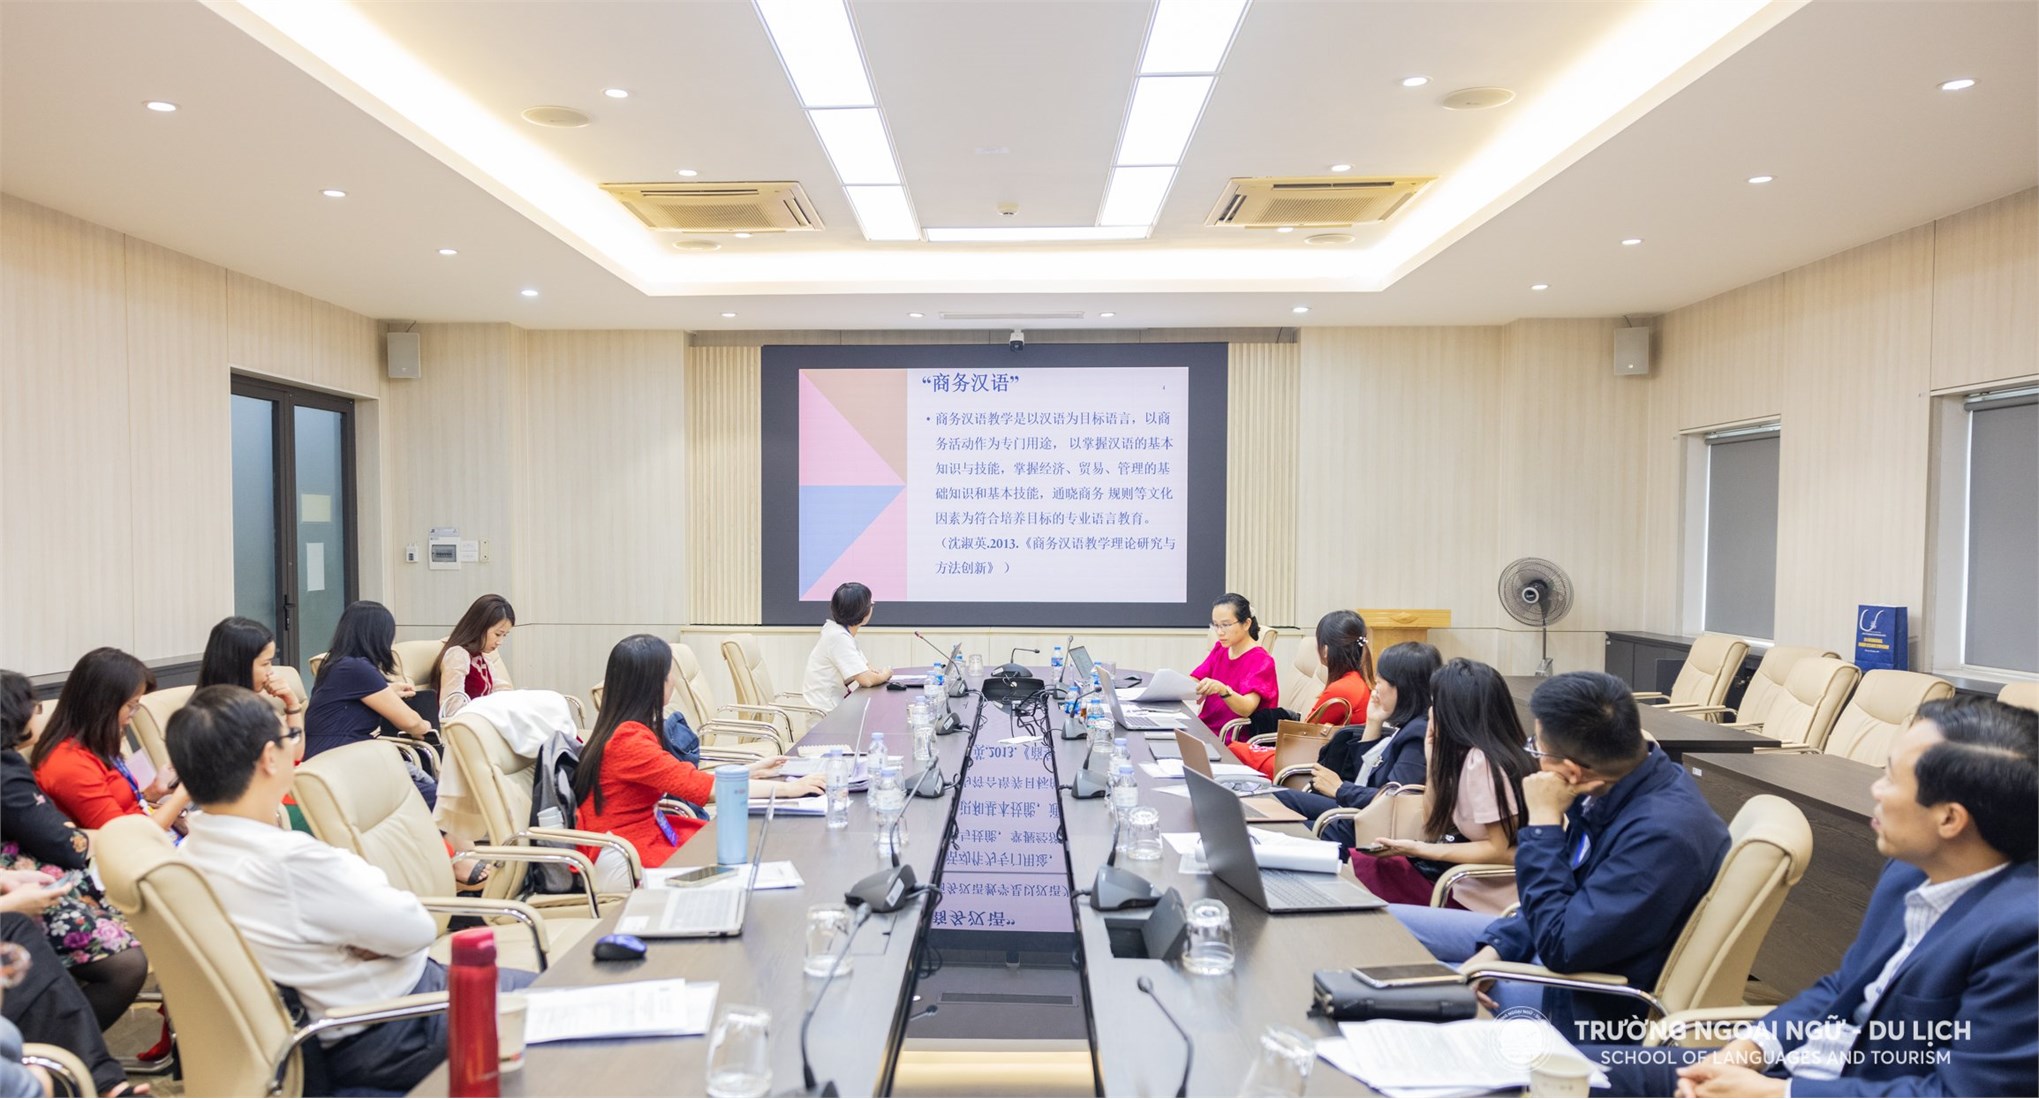 Hội thảo khoa học quốc tế Trung Quốc học và Ngôn ngữ Trung Quốc năm 2023